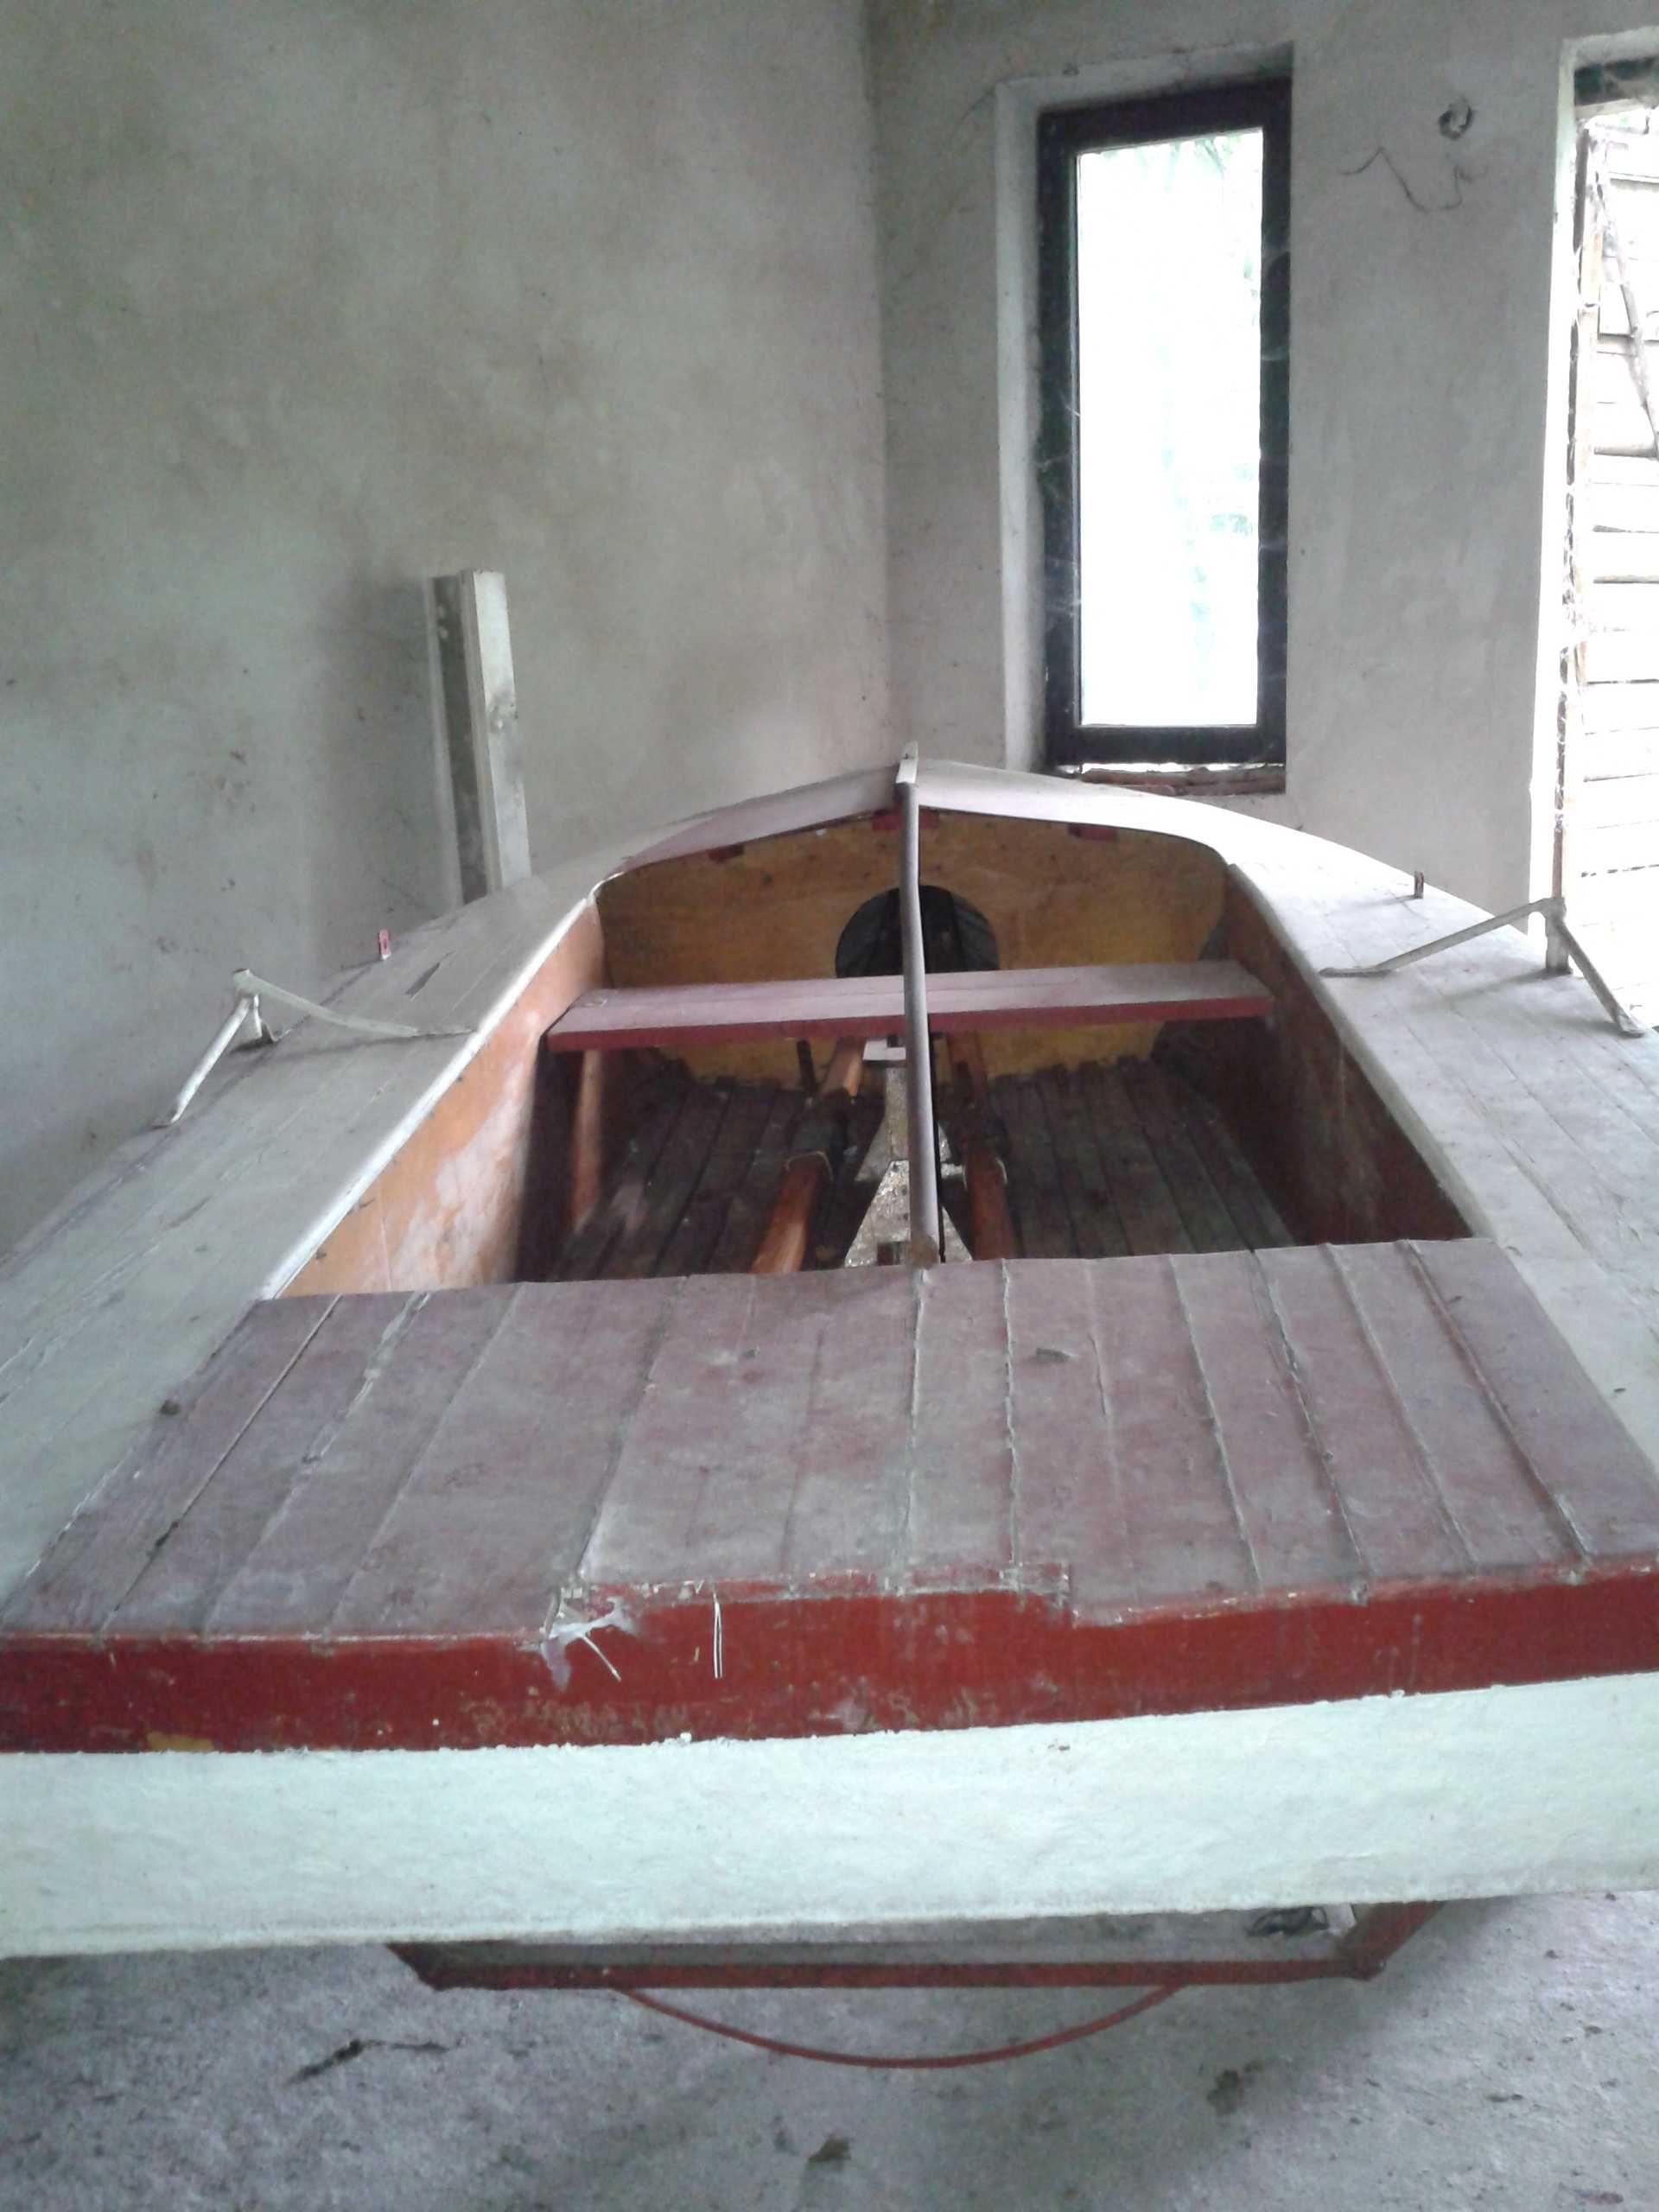 Łódka w formie żaglówki wędkarskiej